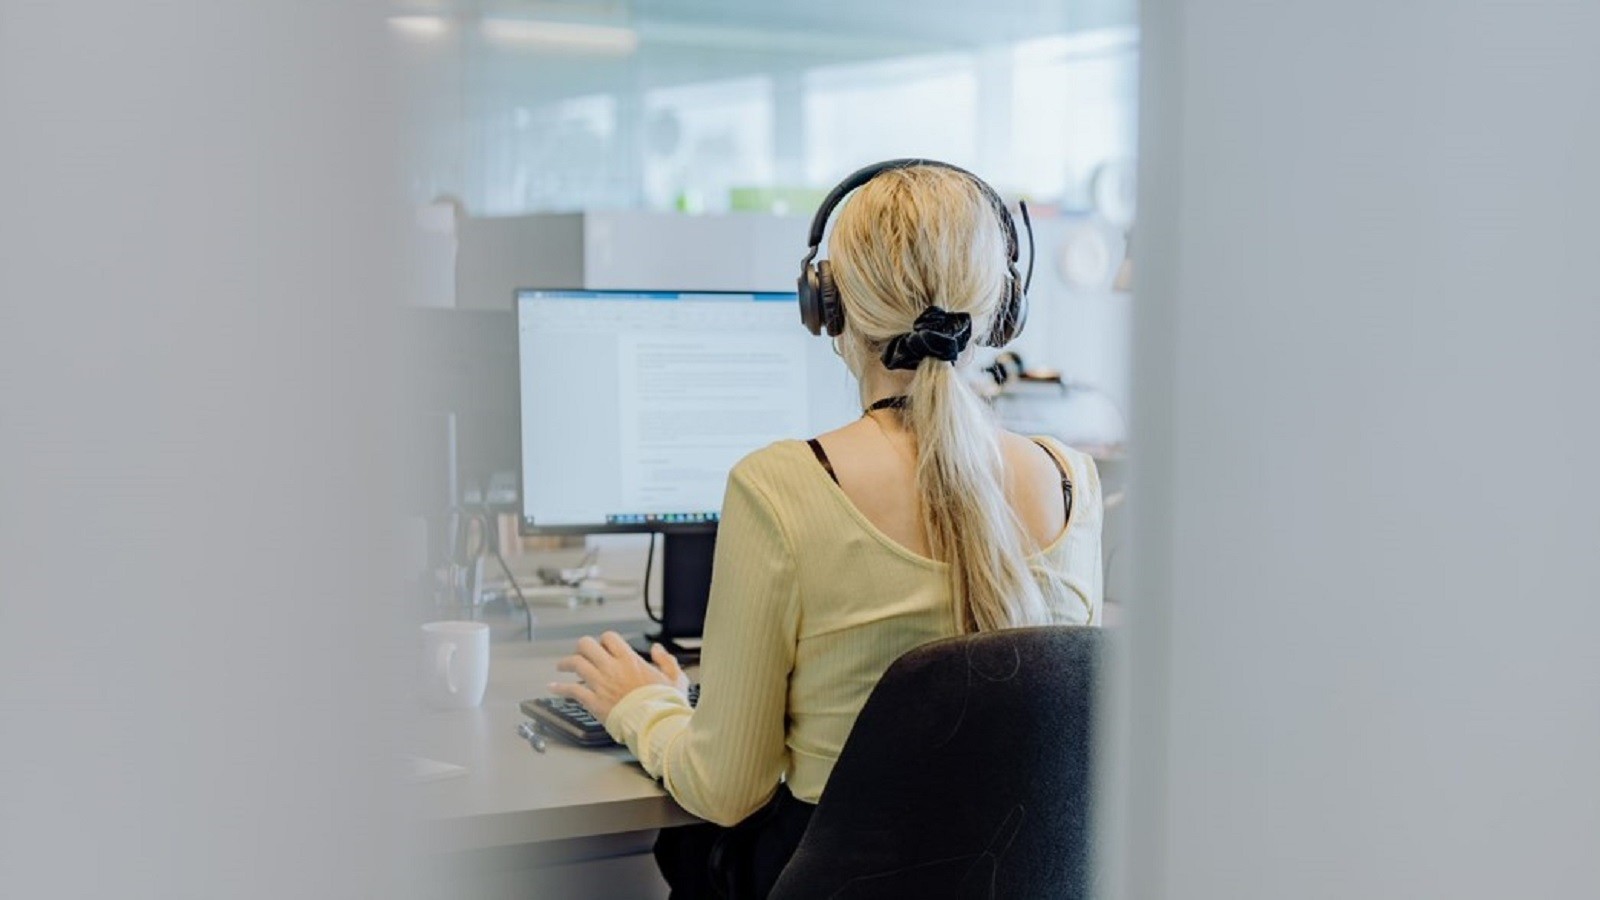 Kvindelig KMD medarbejder, der sidder og arbejder ved sit skrivebord med høretelefoner på set bagfra